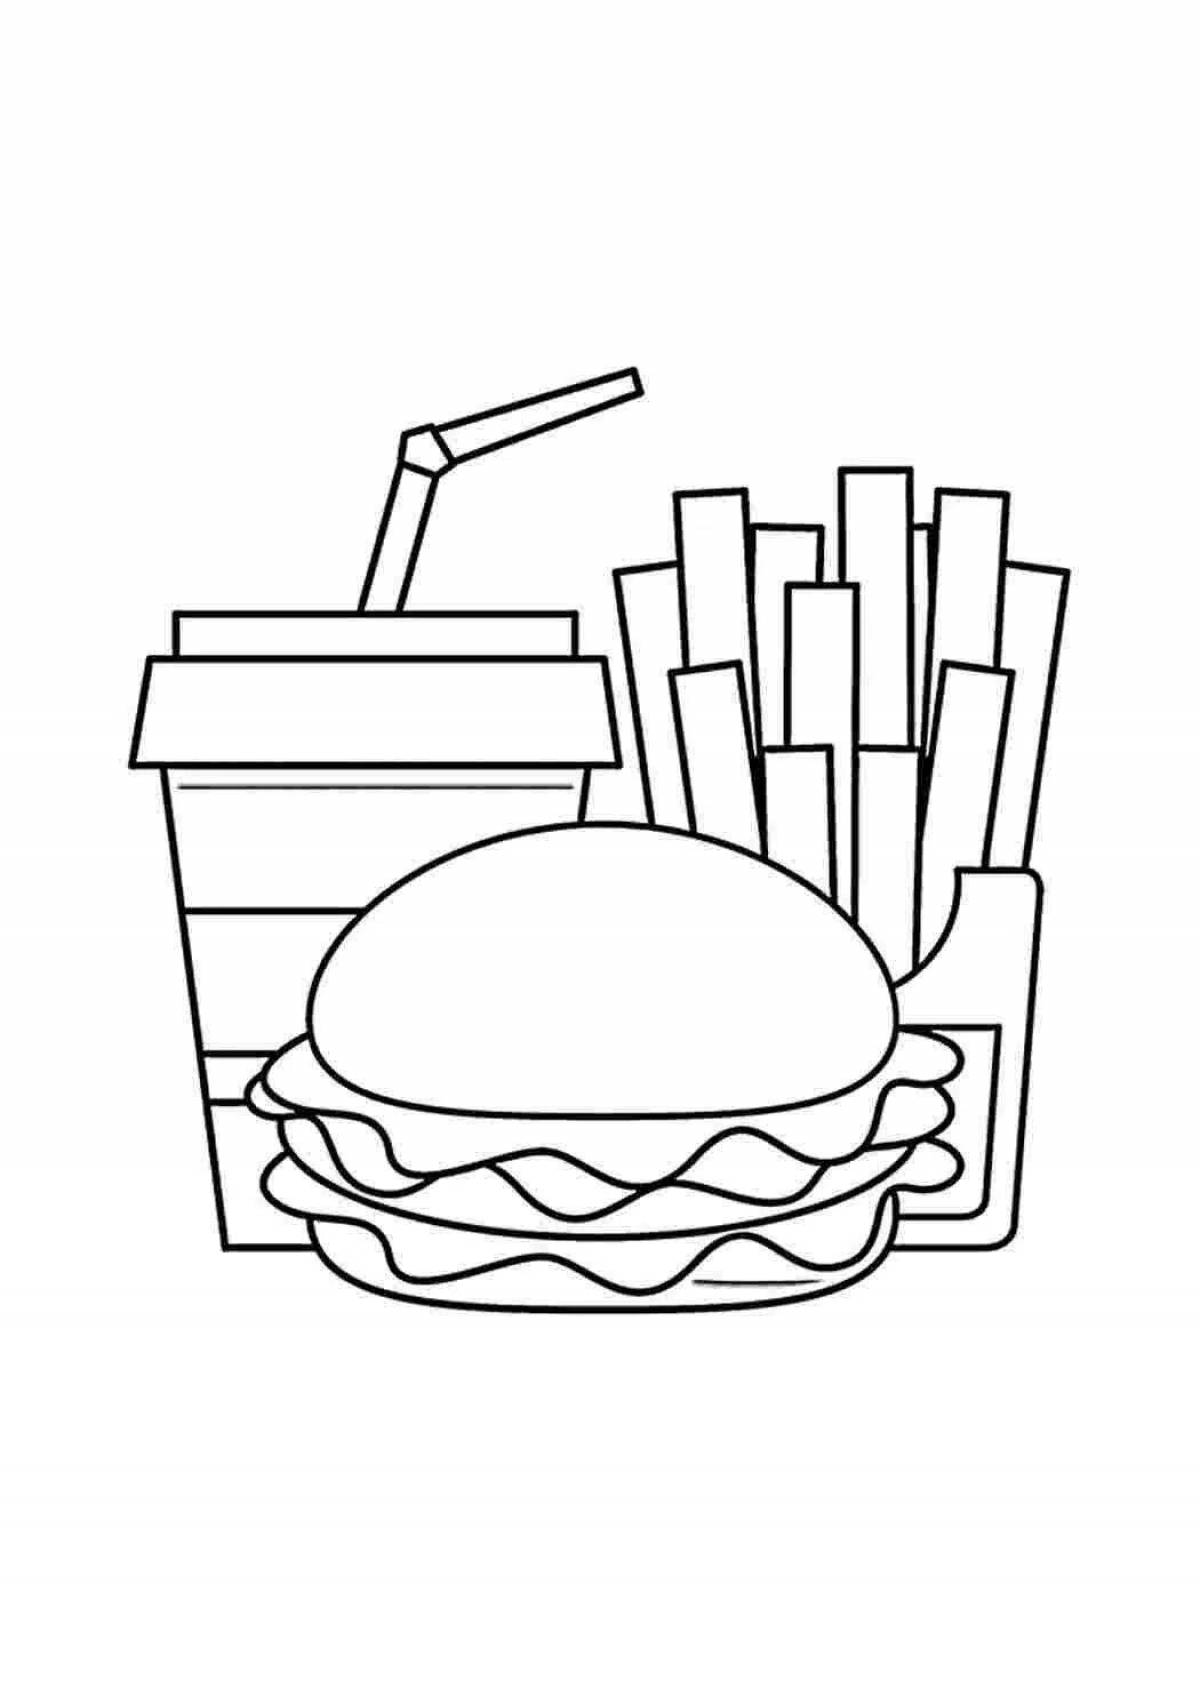 Заманчивая страница раскраски бургеров и картофеля фри